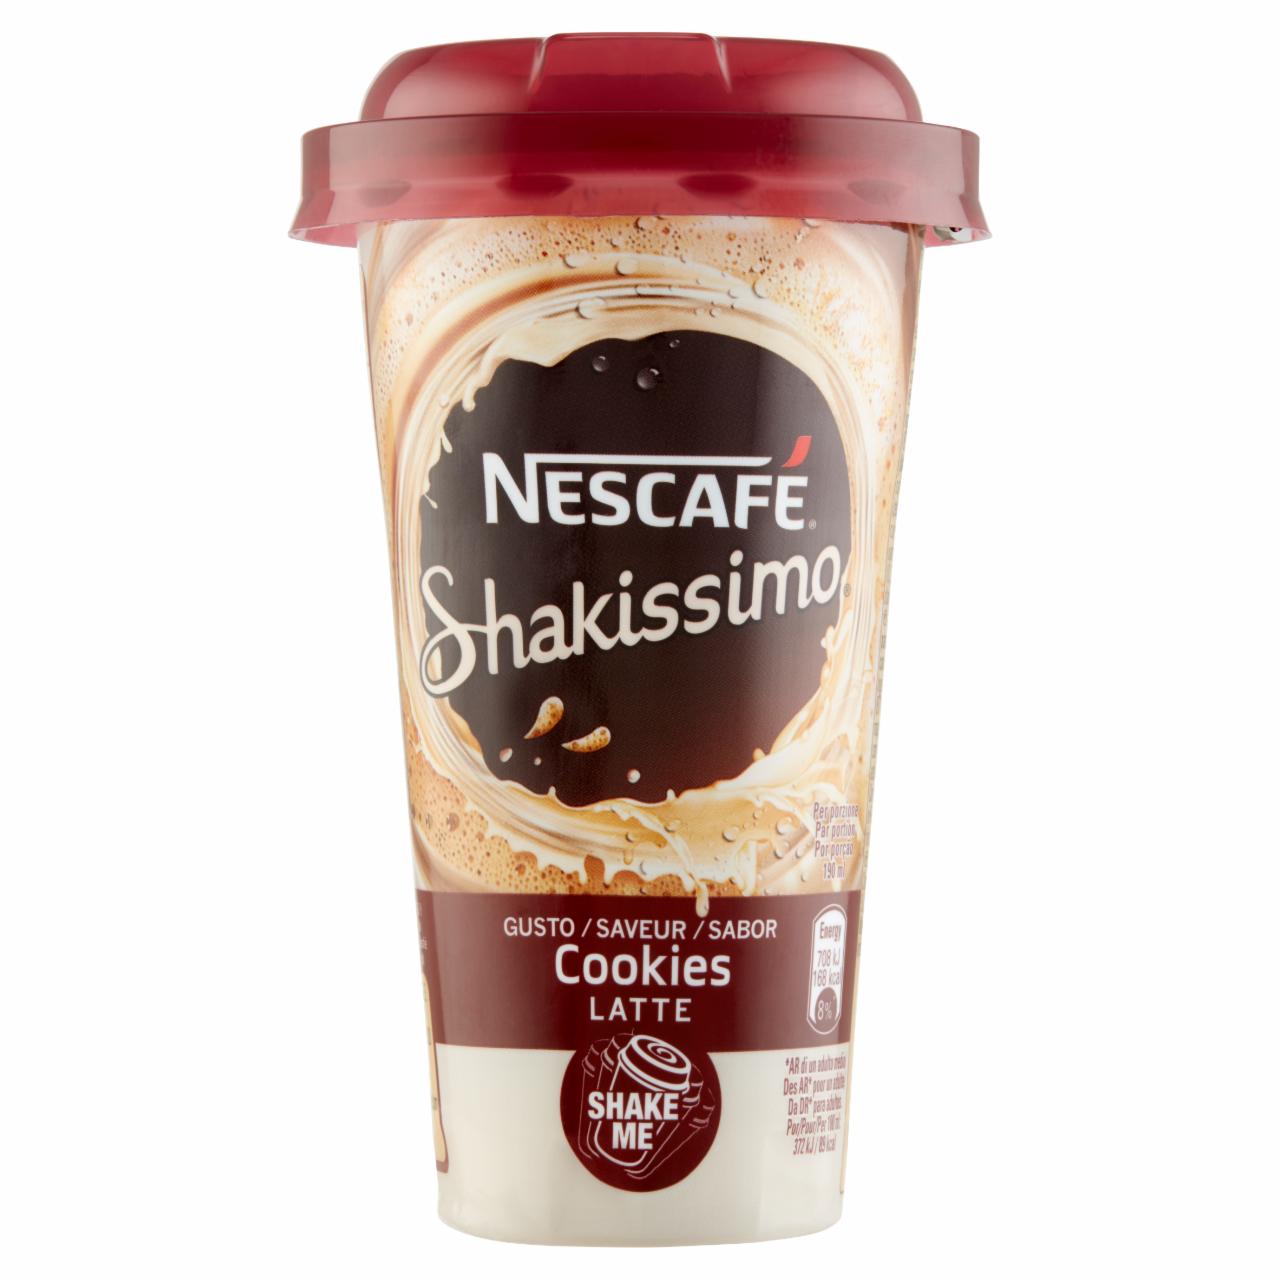 Képek - Nescafé Shakissimo Cookies ízesített félzsíros tejkészítmény kávéval, kakaó és keksz ízzel 190 ml